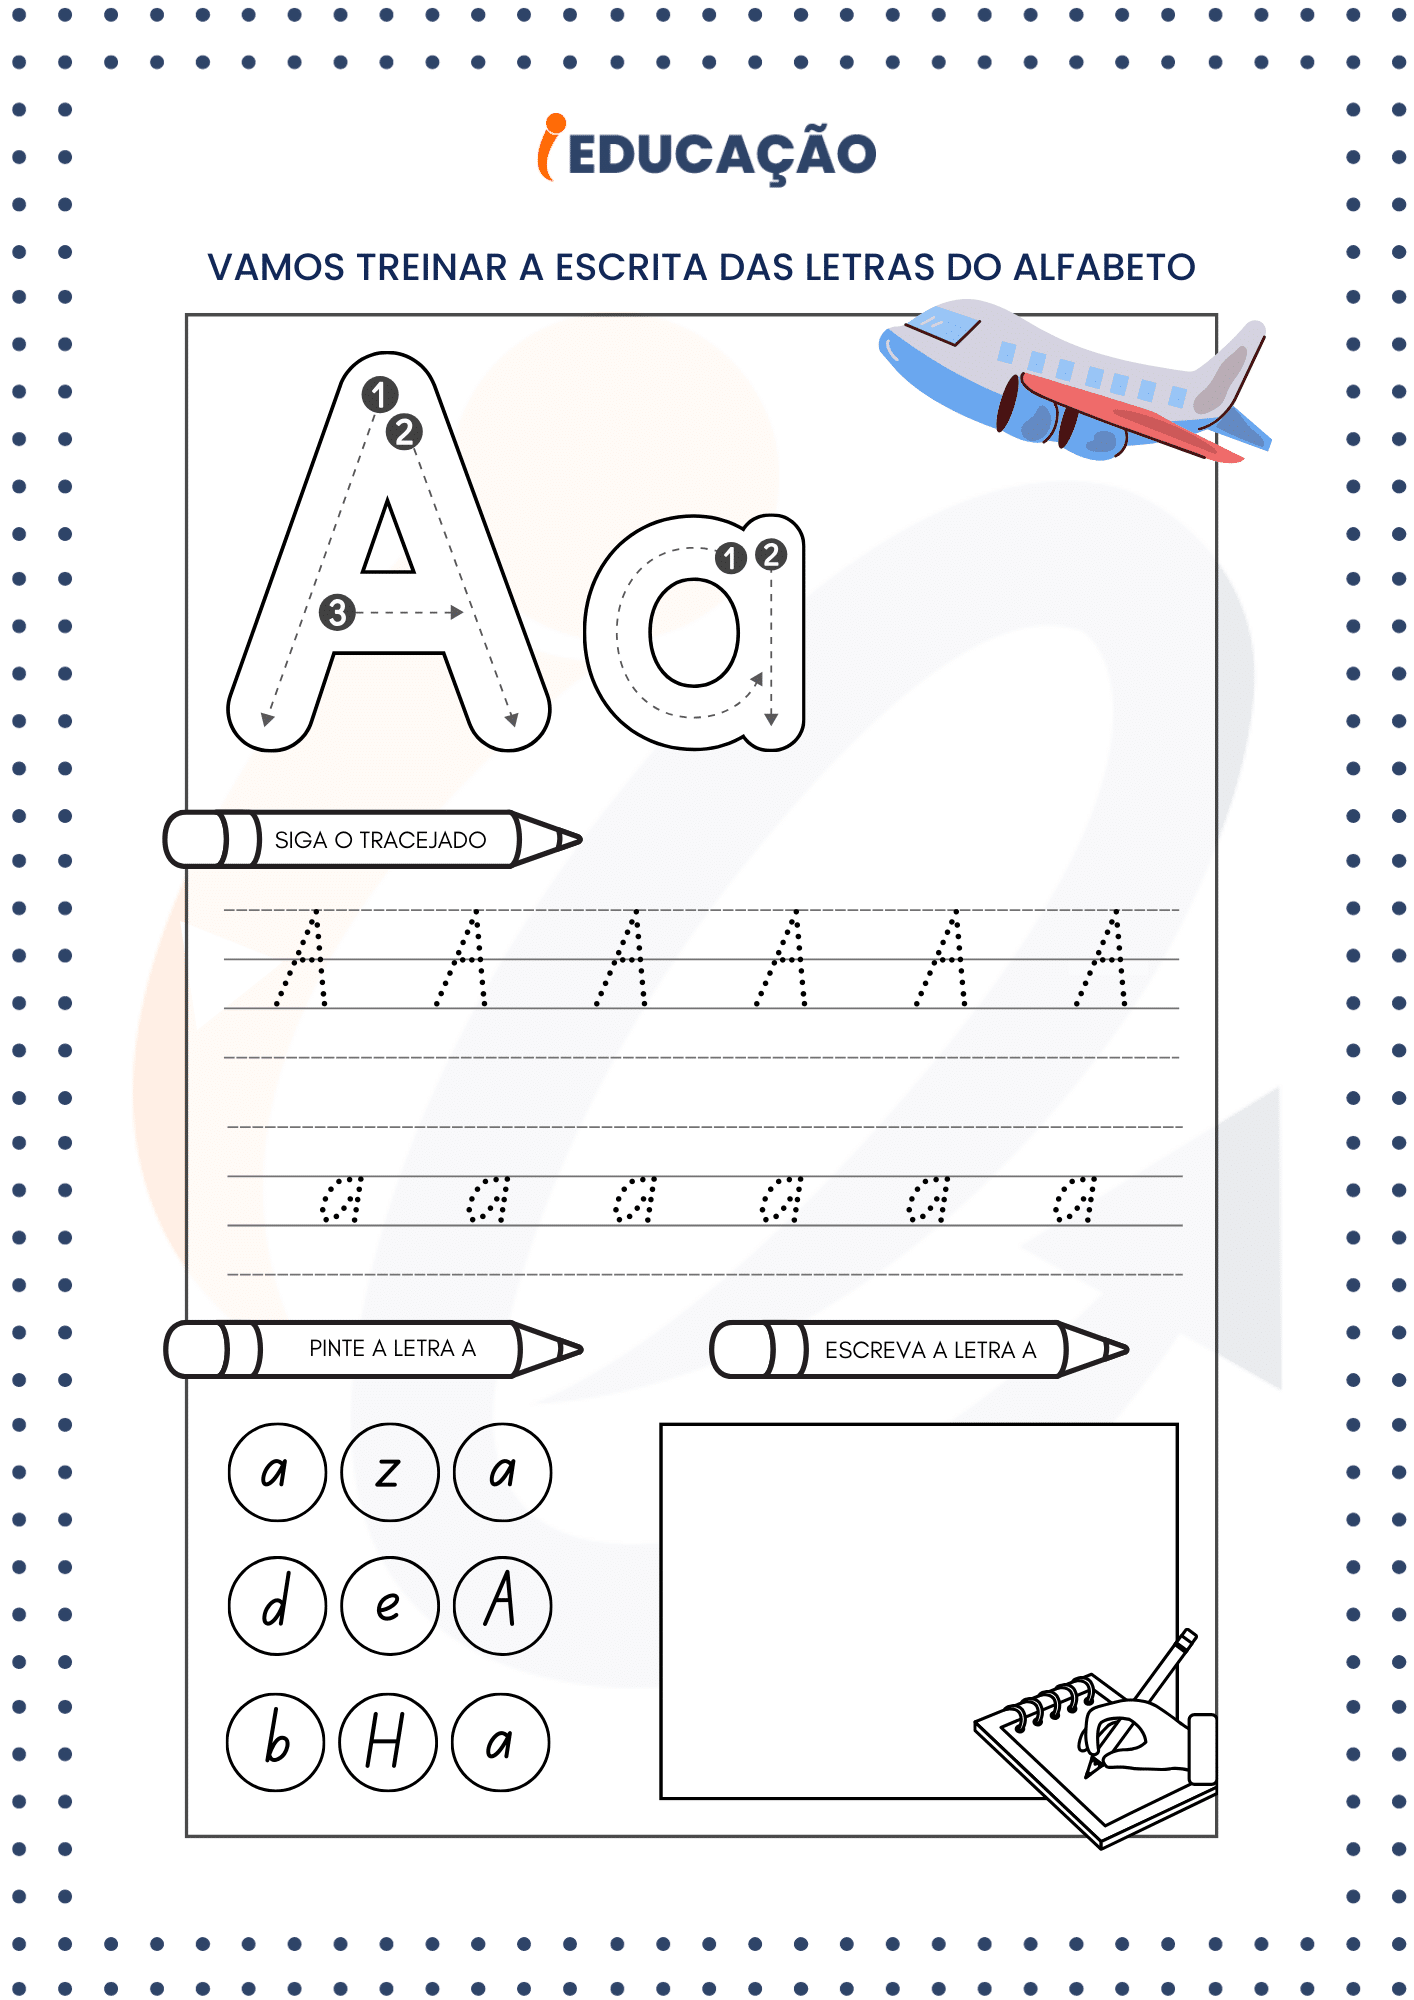 Atividade com Alfabeto para Educação Infantil - Tracejado da letra C